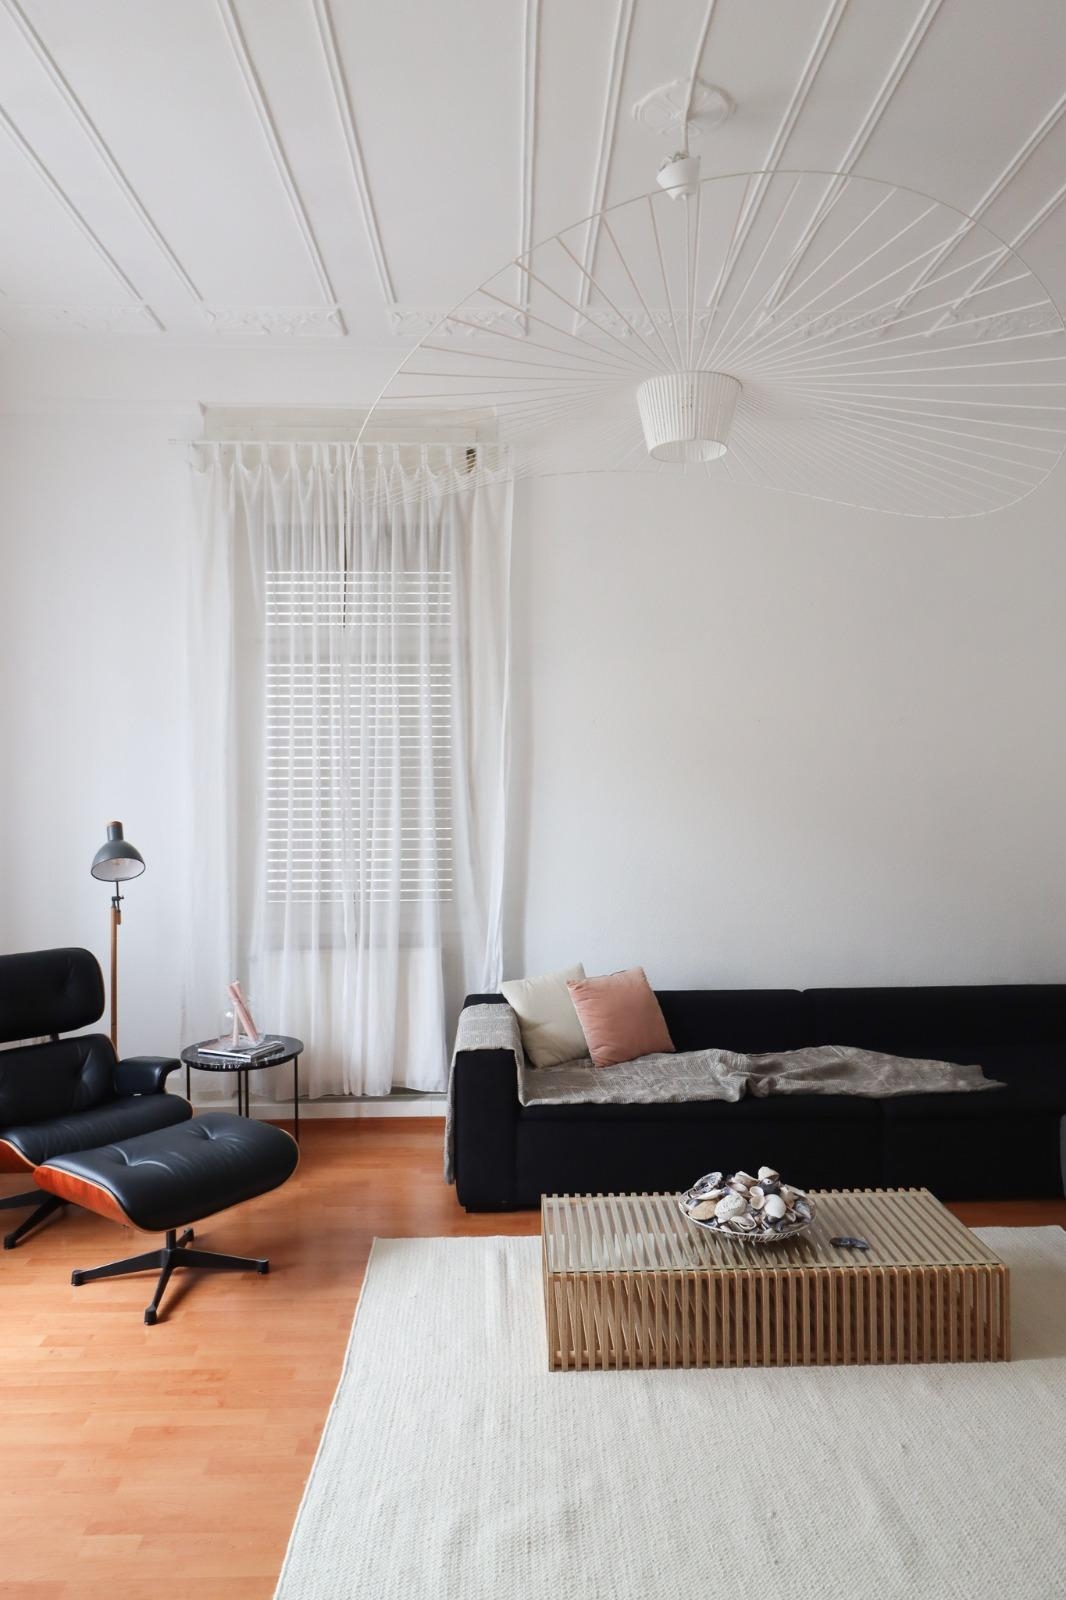 Das #Wohnzimmer im (fast) neuem Gewand. #makeover #lampe #teppich #couchstyle